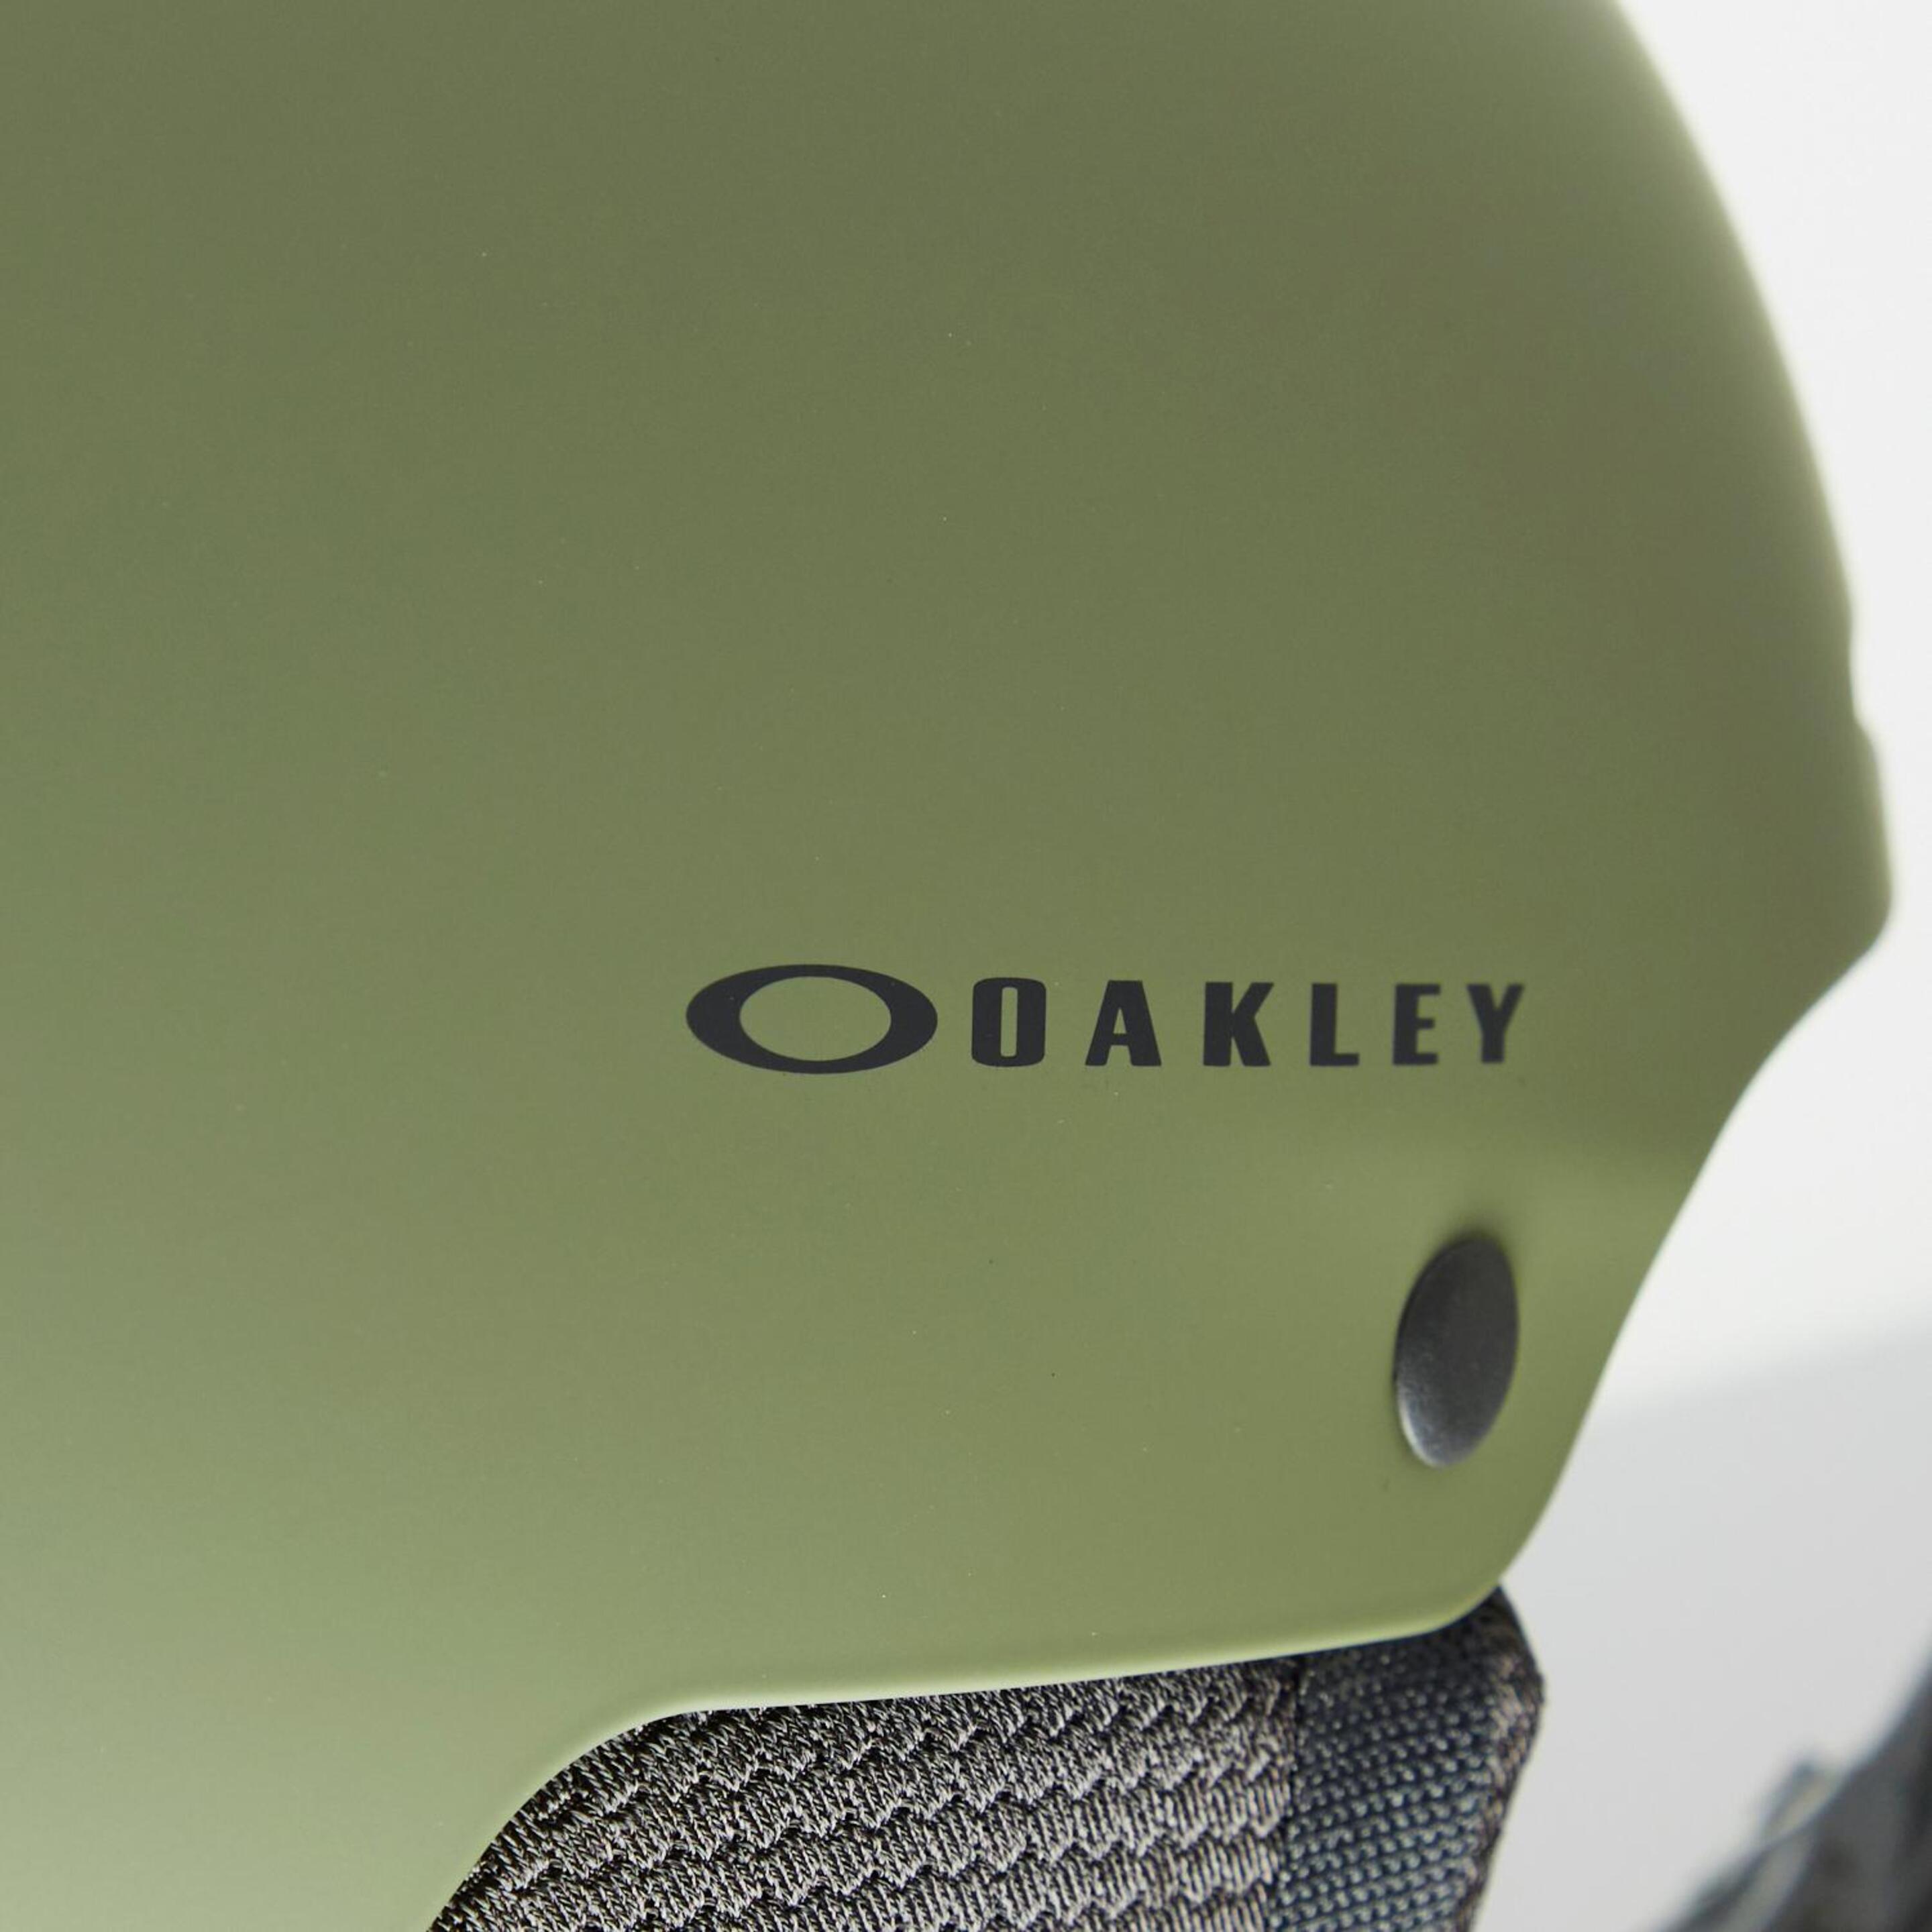 Casco Esquí Oakley - Kaki - Casco Esquí Unisex